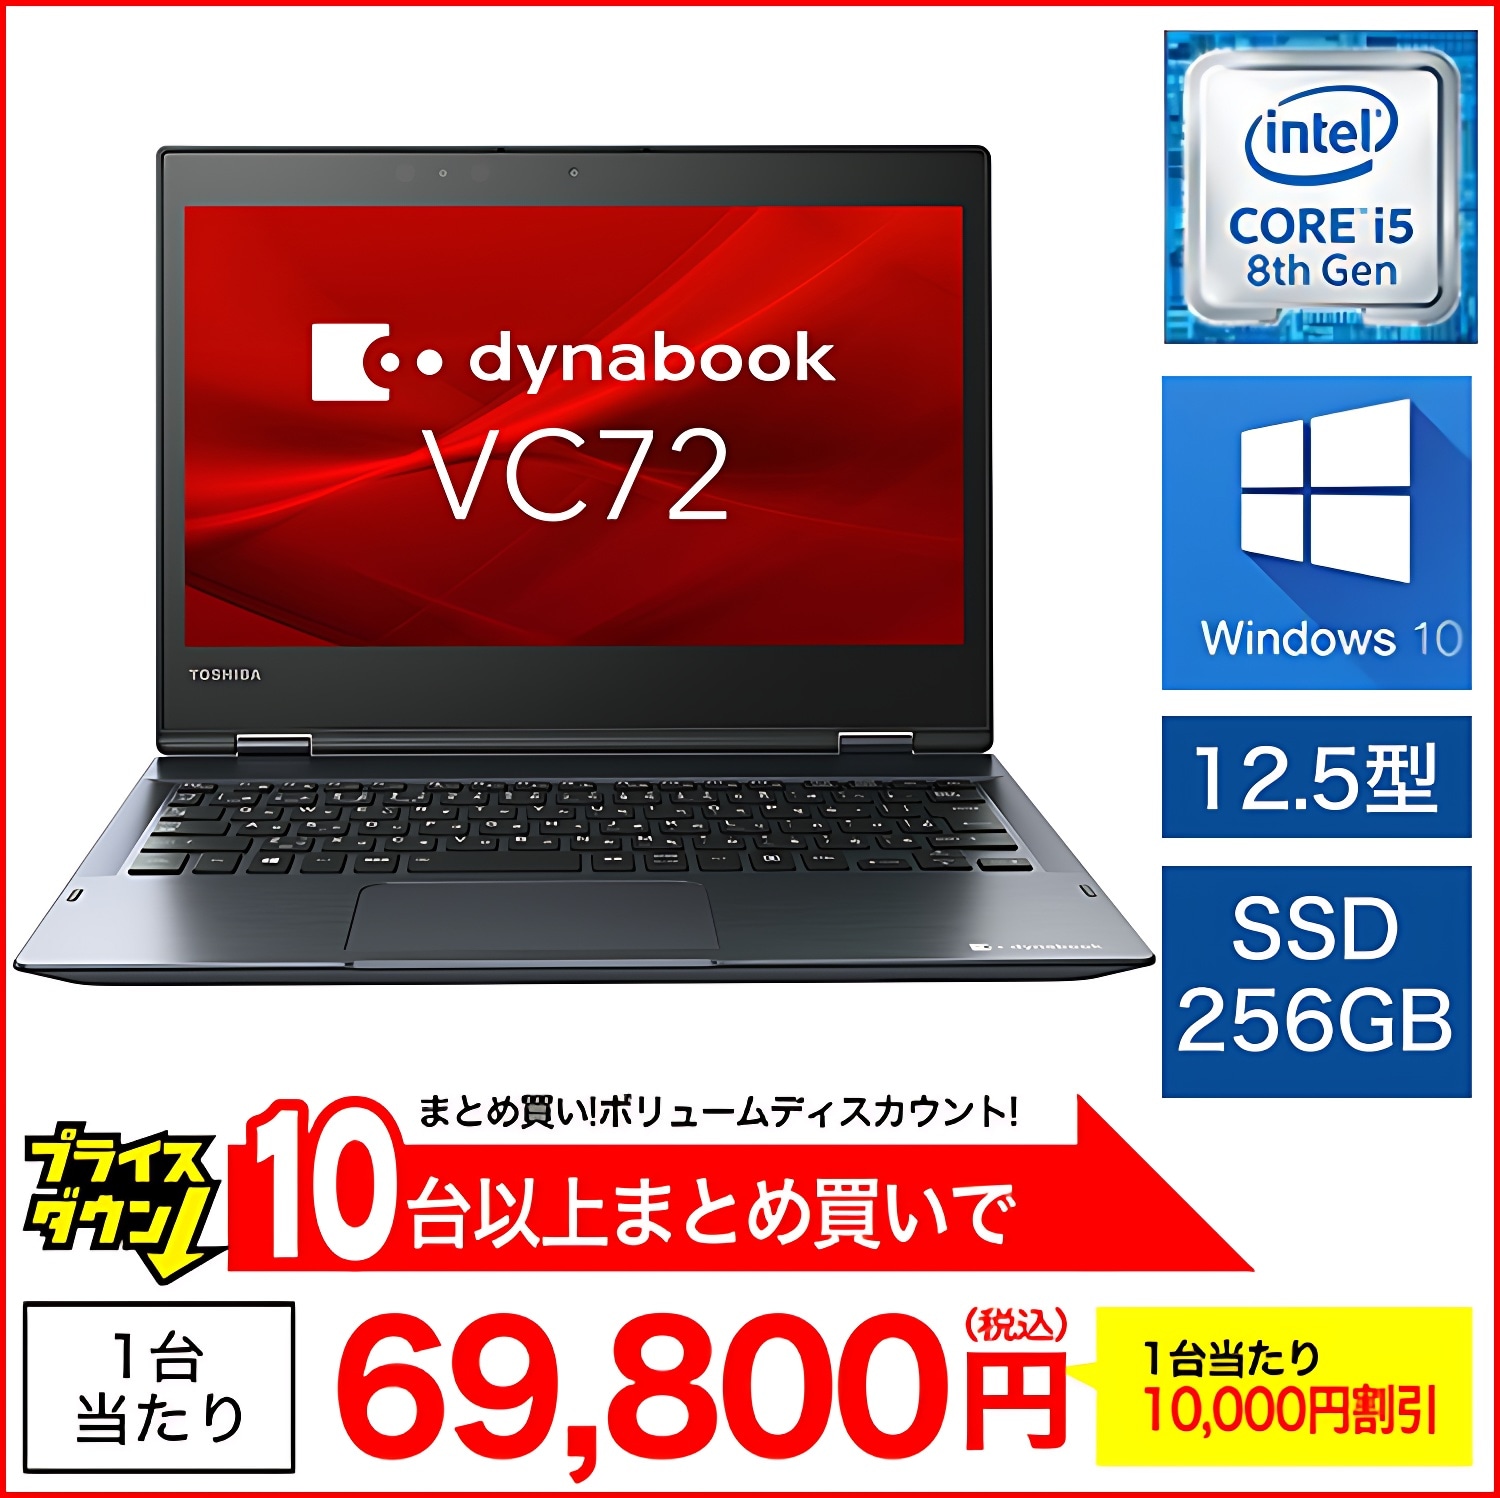 9,996円dynabook VC72 第8世代Corei5 8GB 256GB タッチ液晶